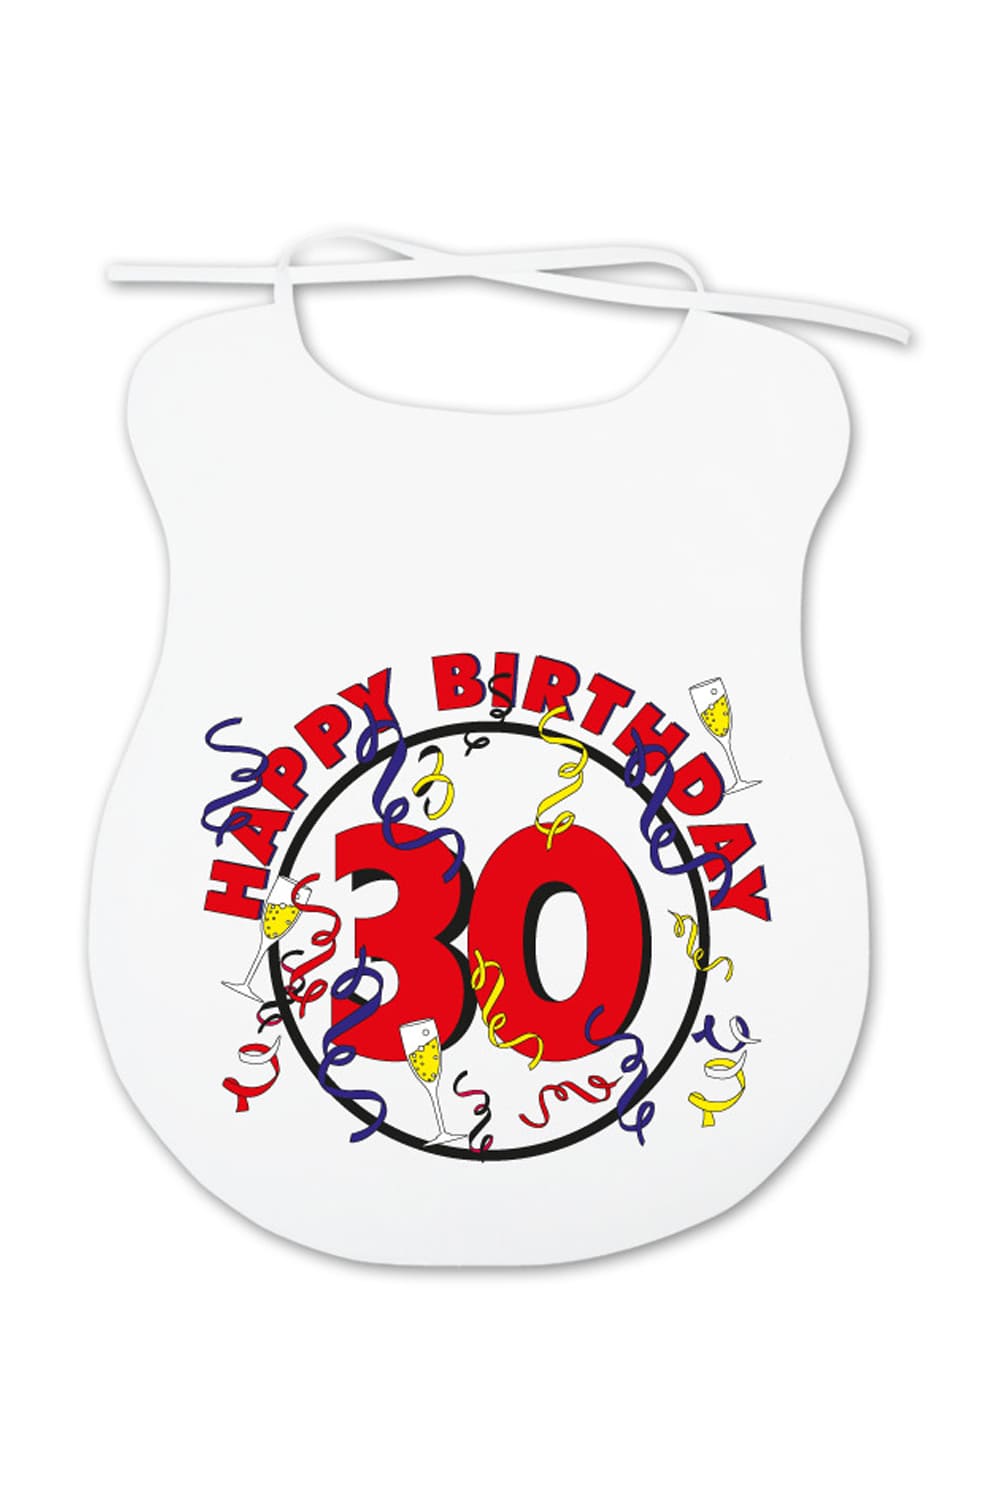 Dieser Erwachsenenlatz ist ein lustiges Geschenk fuer alle Erwachsene, die mehr oder weniger beim Essen kleckern und Humor lieben. Auf dem Spaghettilatz ist ein cooles Bild aufgedruckt sowie die Zahl 30 und die Aufschrift: Happy Birthday. Dieses witzige Geschenk oder Mitbringsel zum 30. Geburtstag!!! 